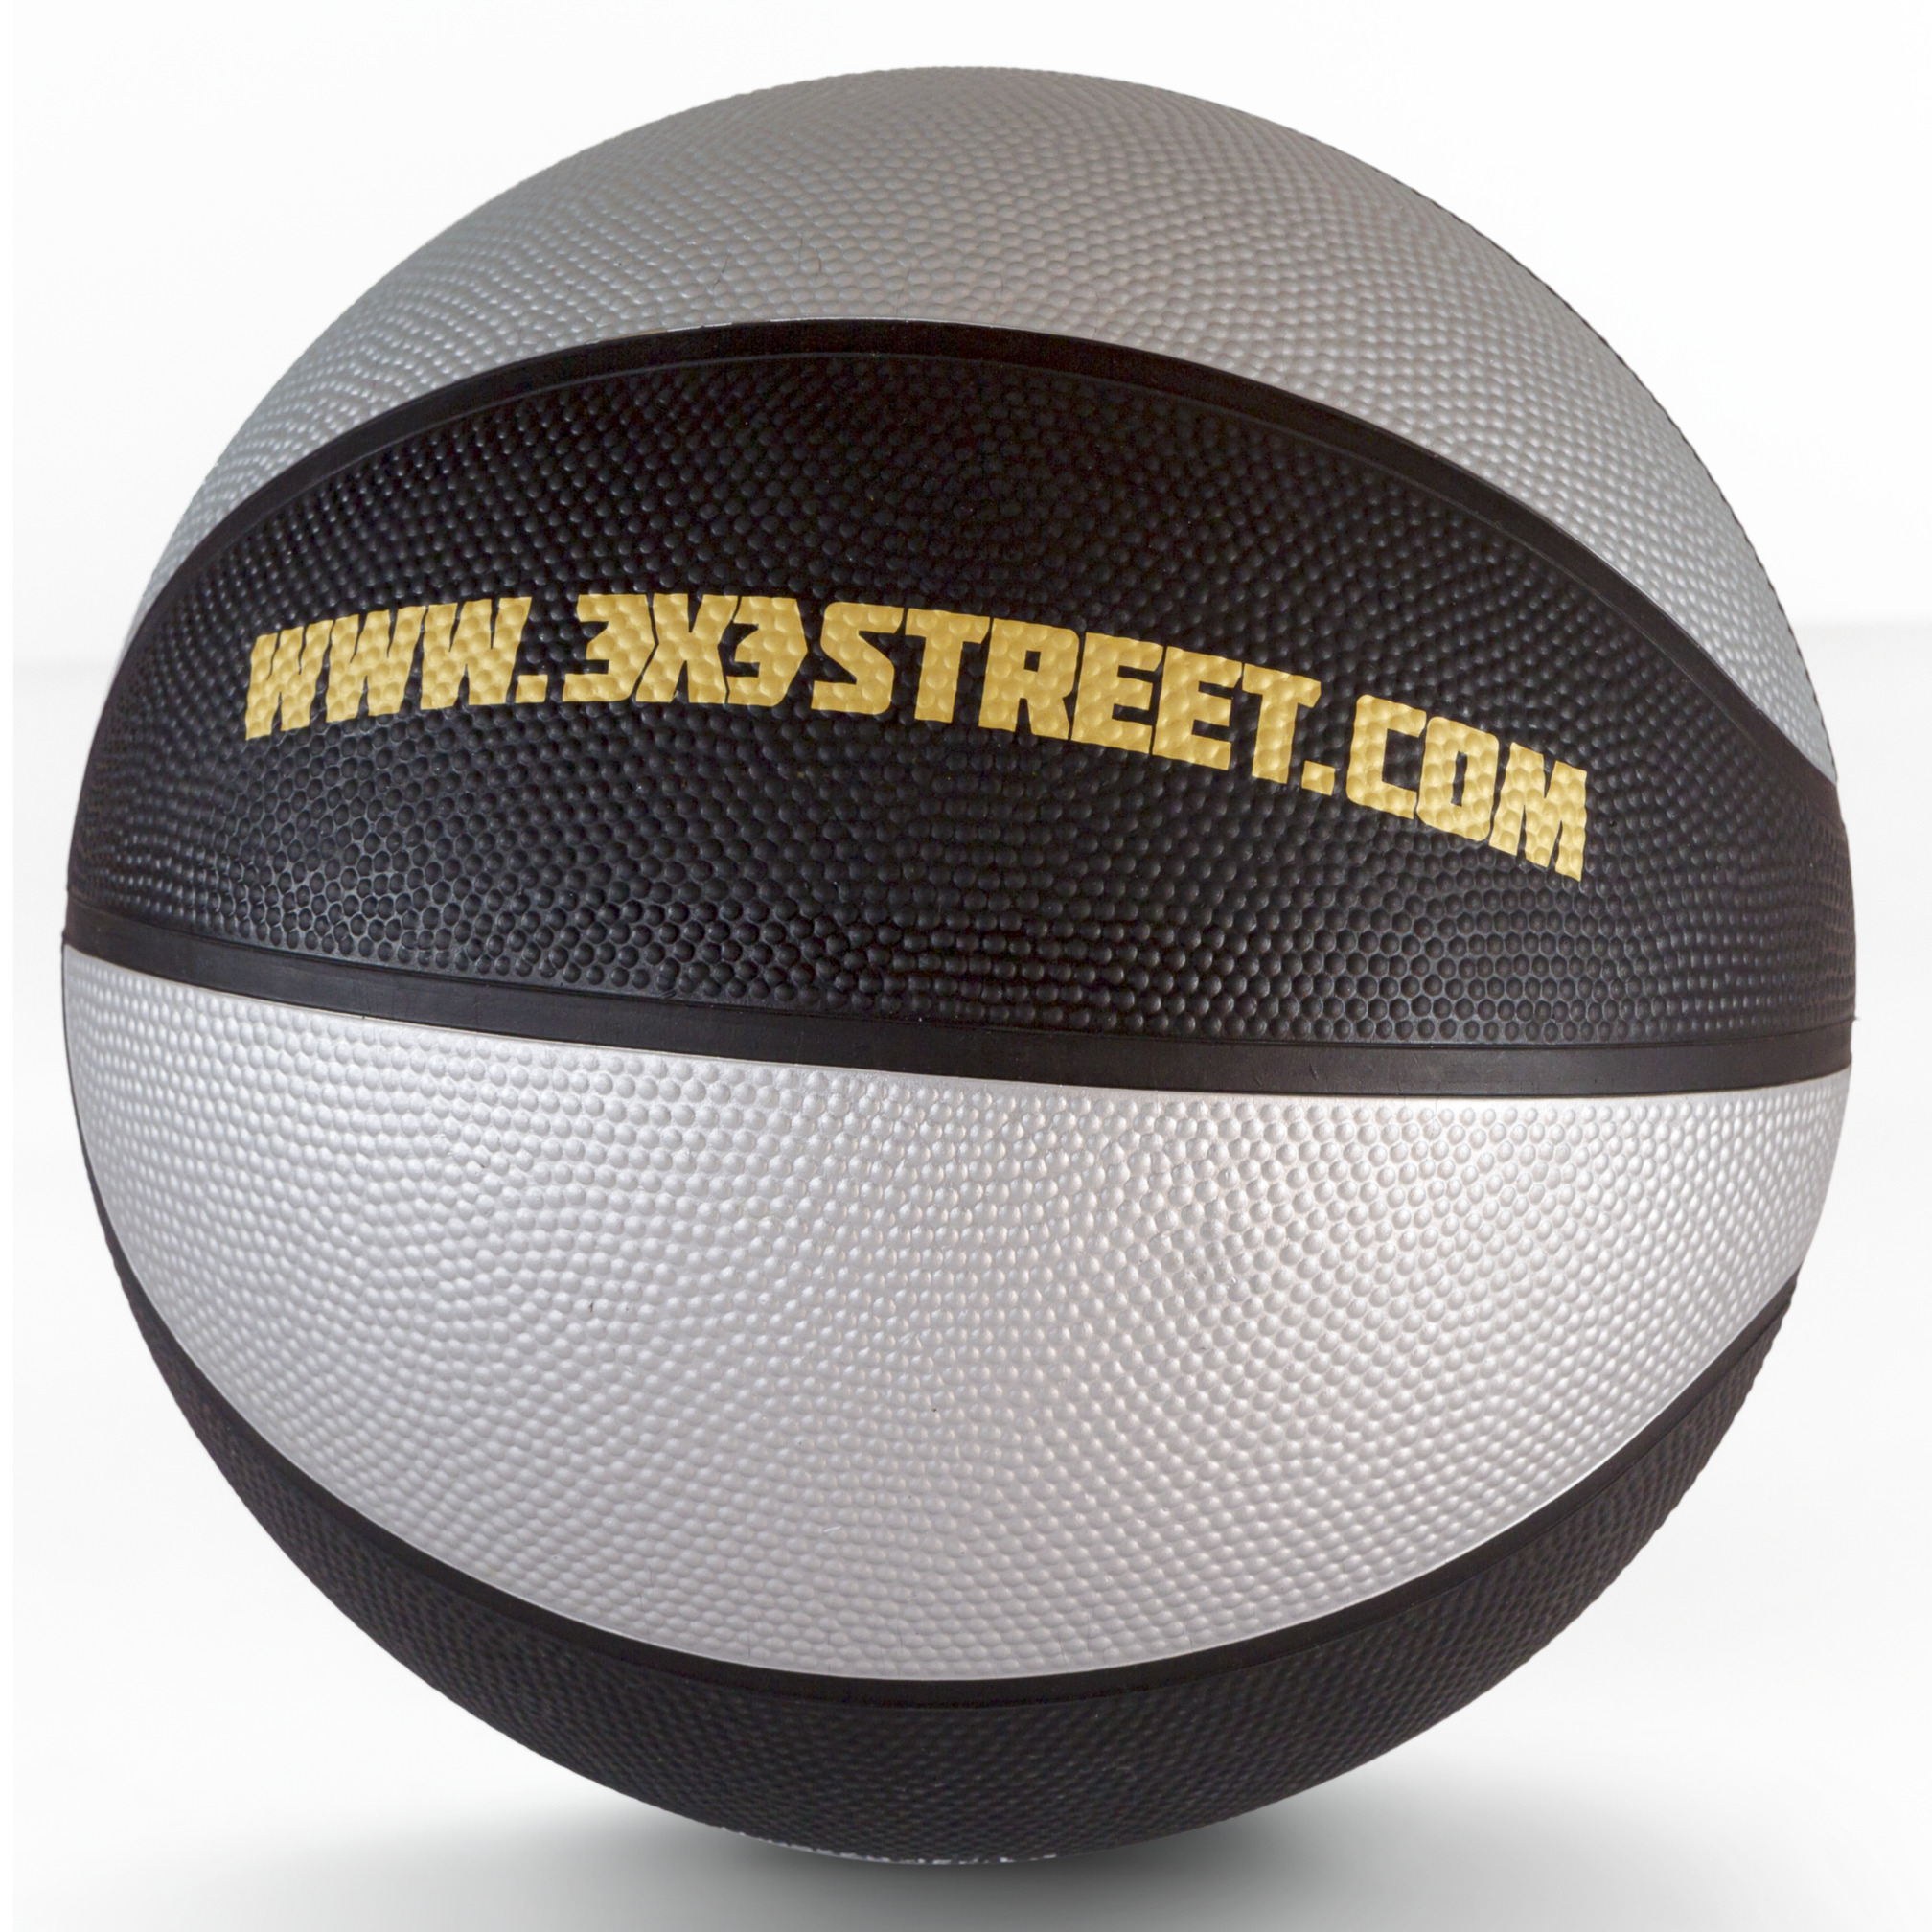 Schelde Sports Basketball 3x3 Street, Größe 6